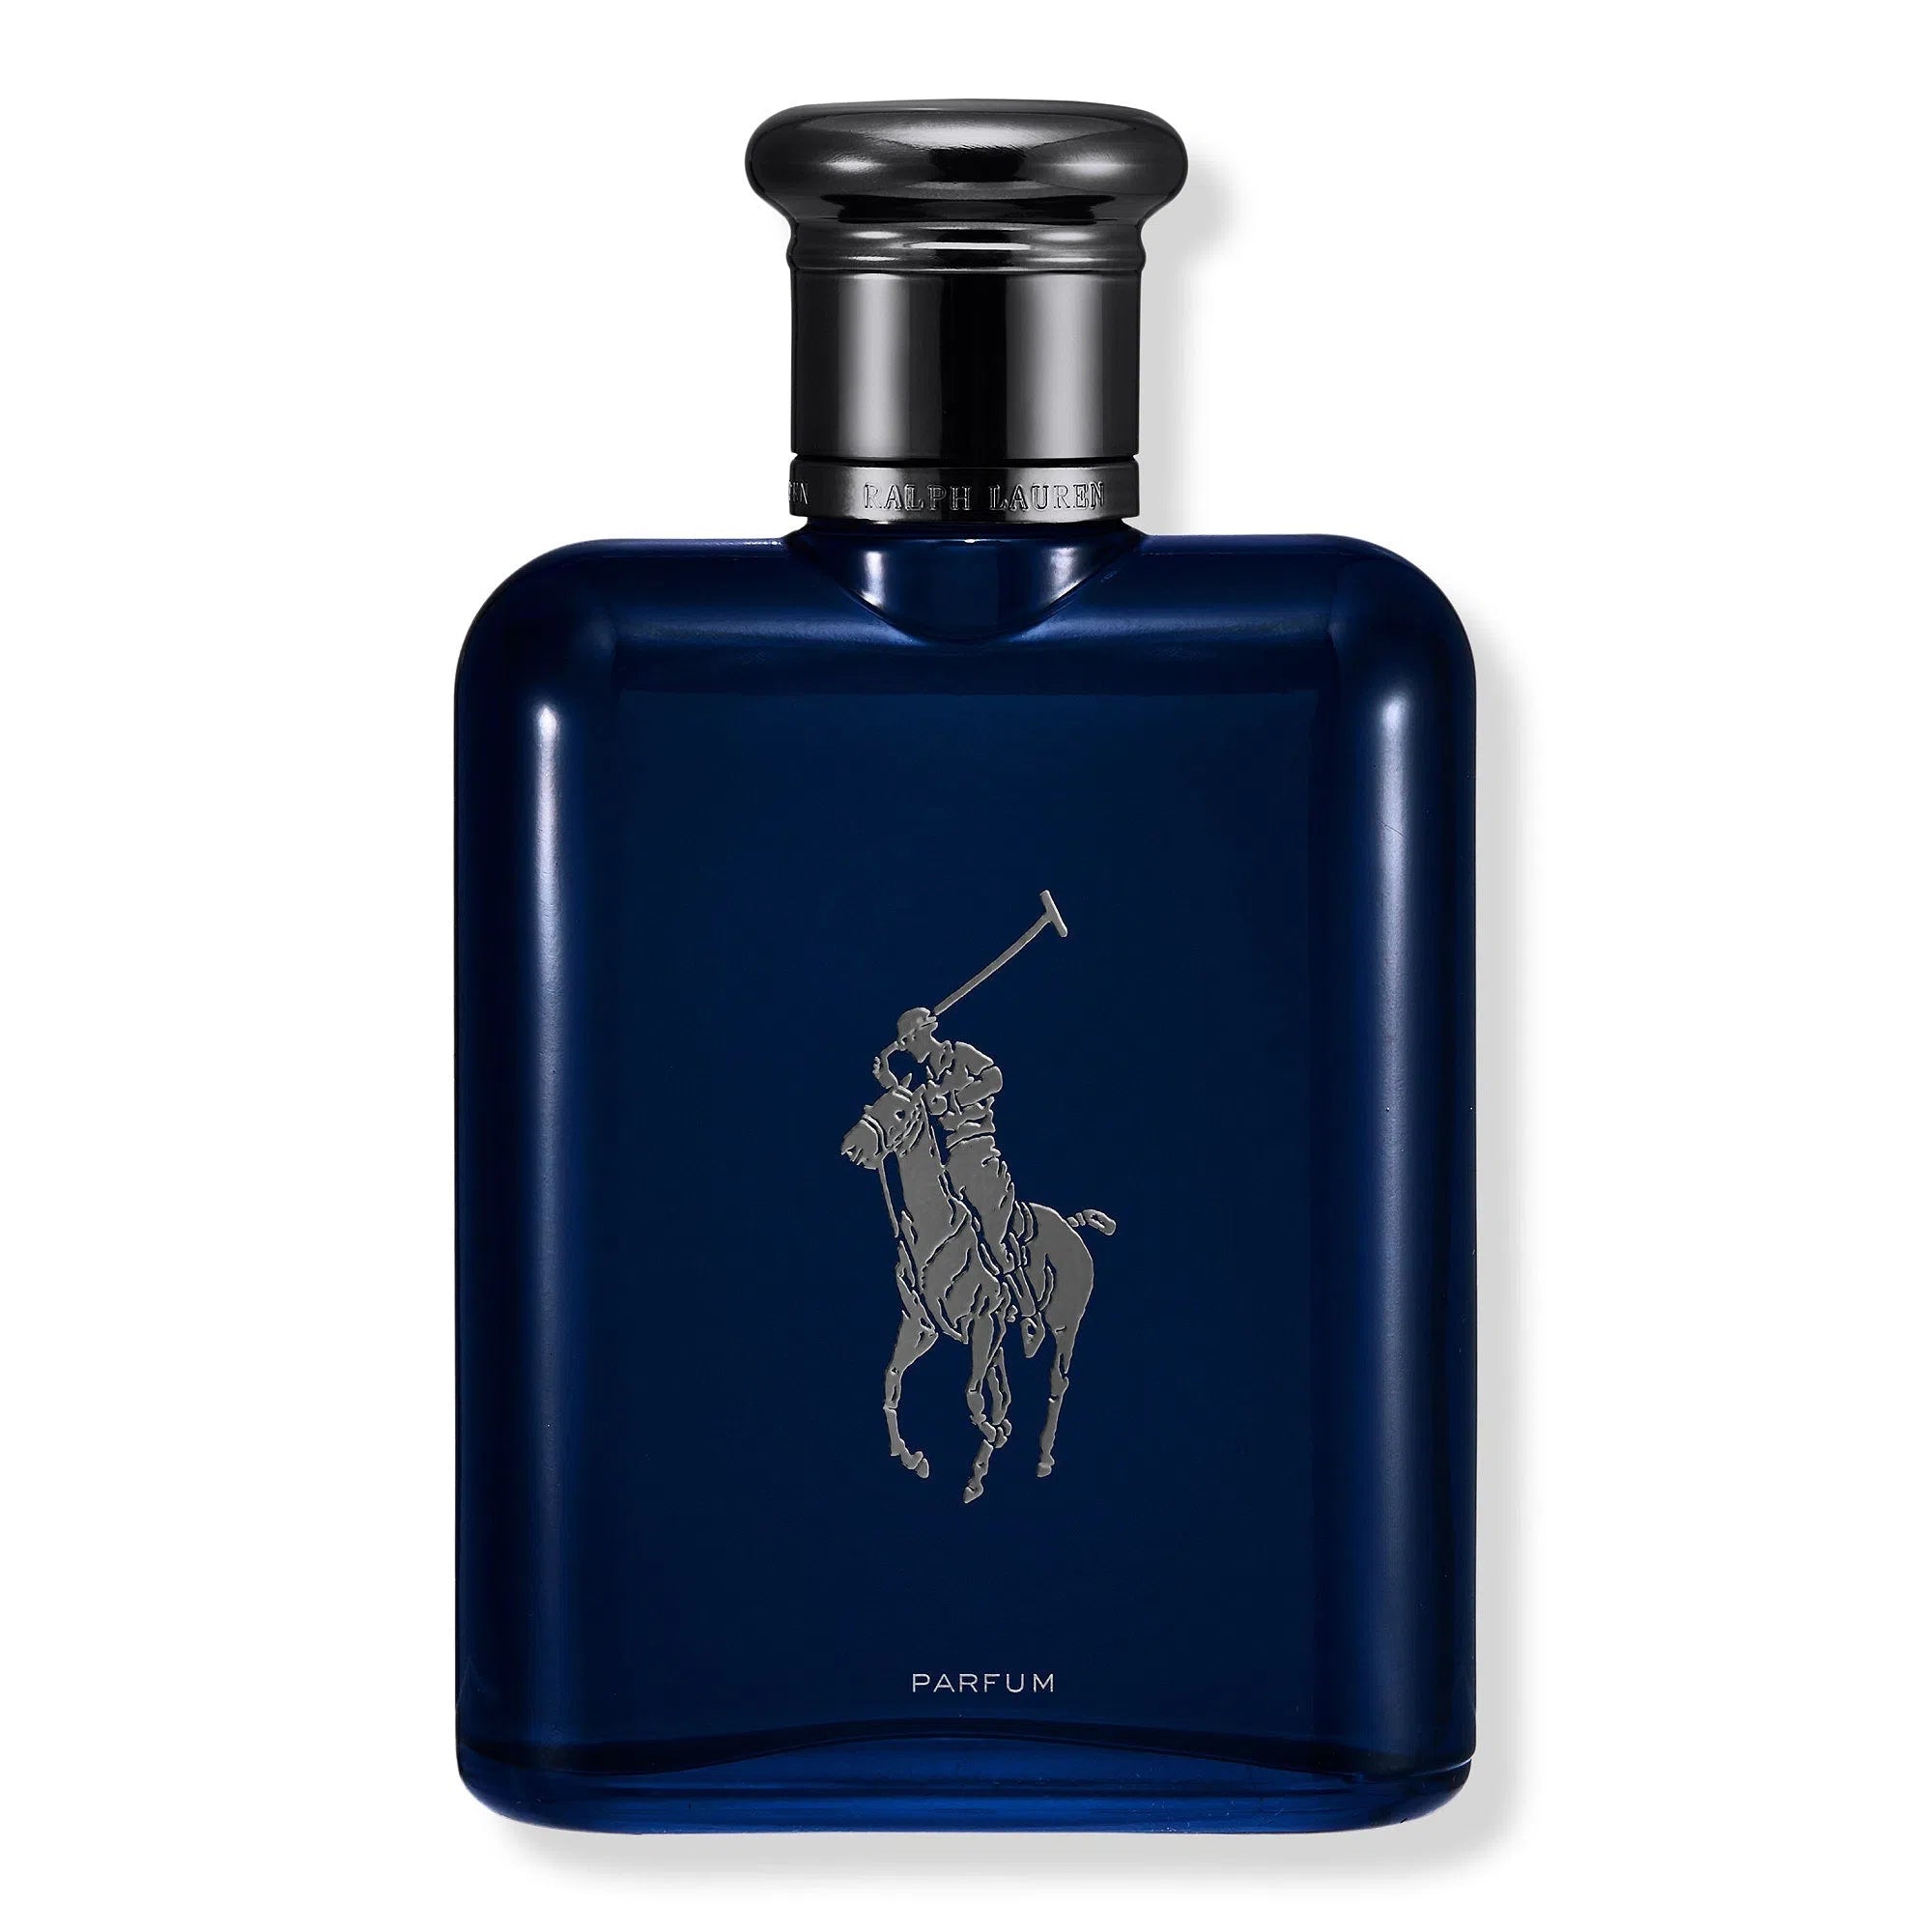 Perfume Ralph Lauren Polo Blue Parfum (M) / 125 ml - 3605972696984- Prive Perfumes Honduras